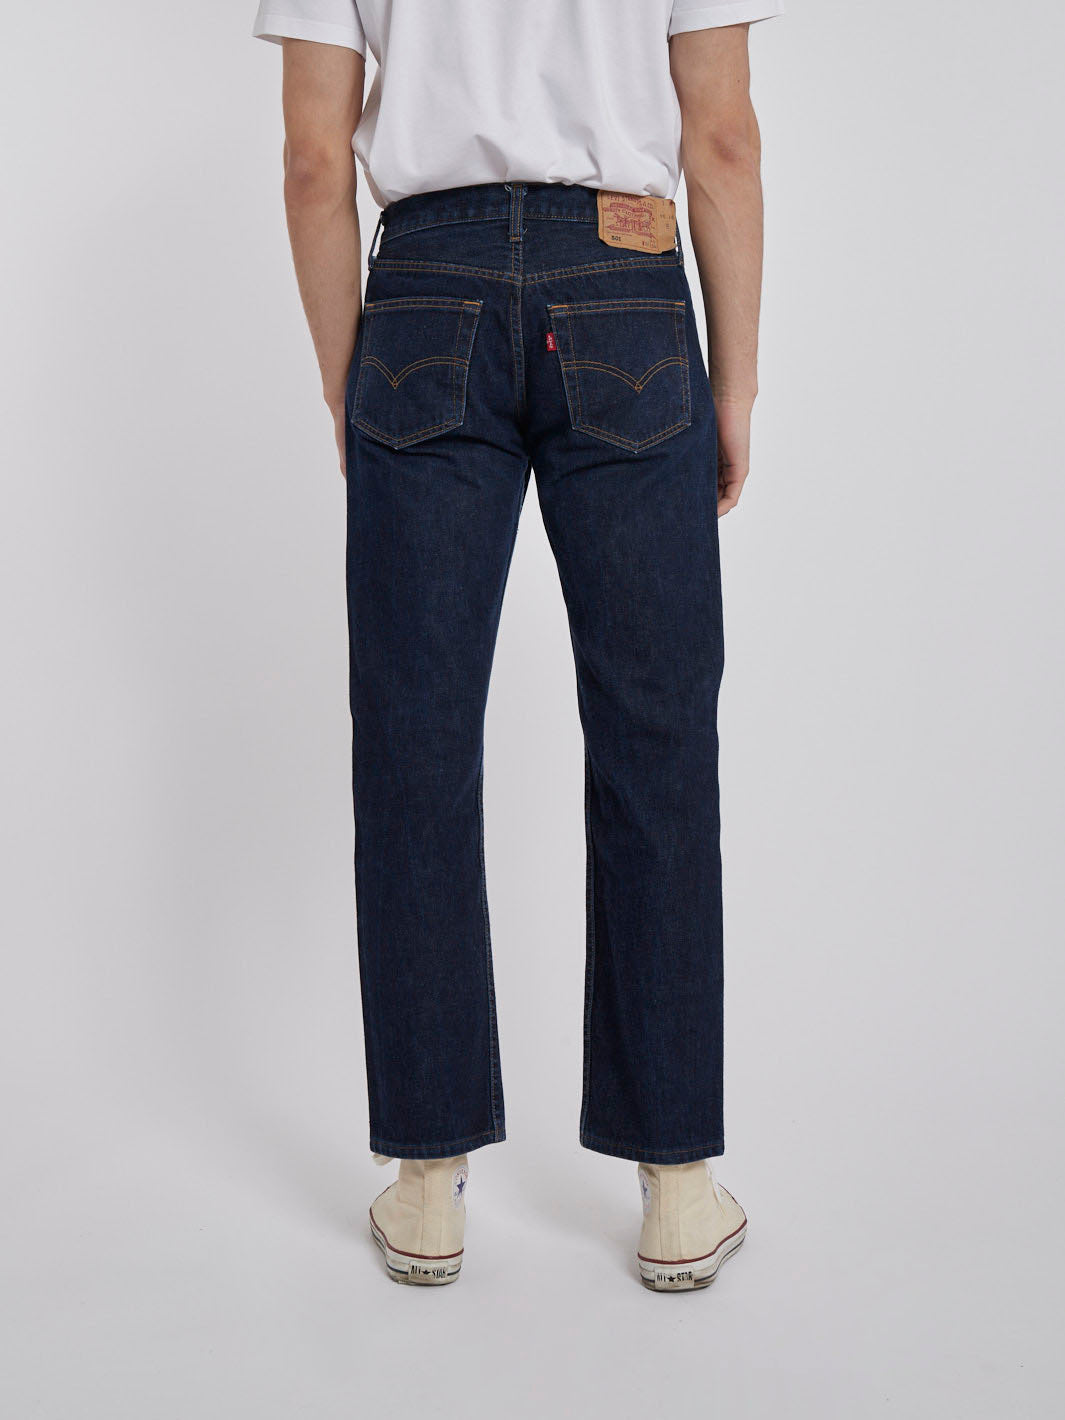 1990s original Levi's 501 jeans